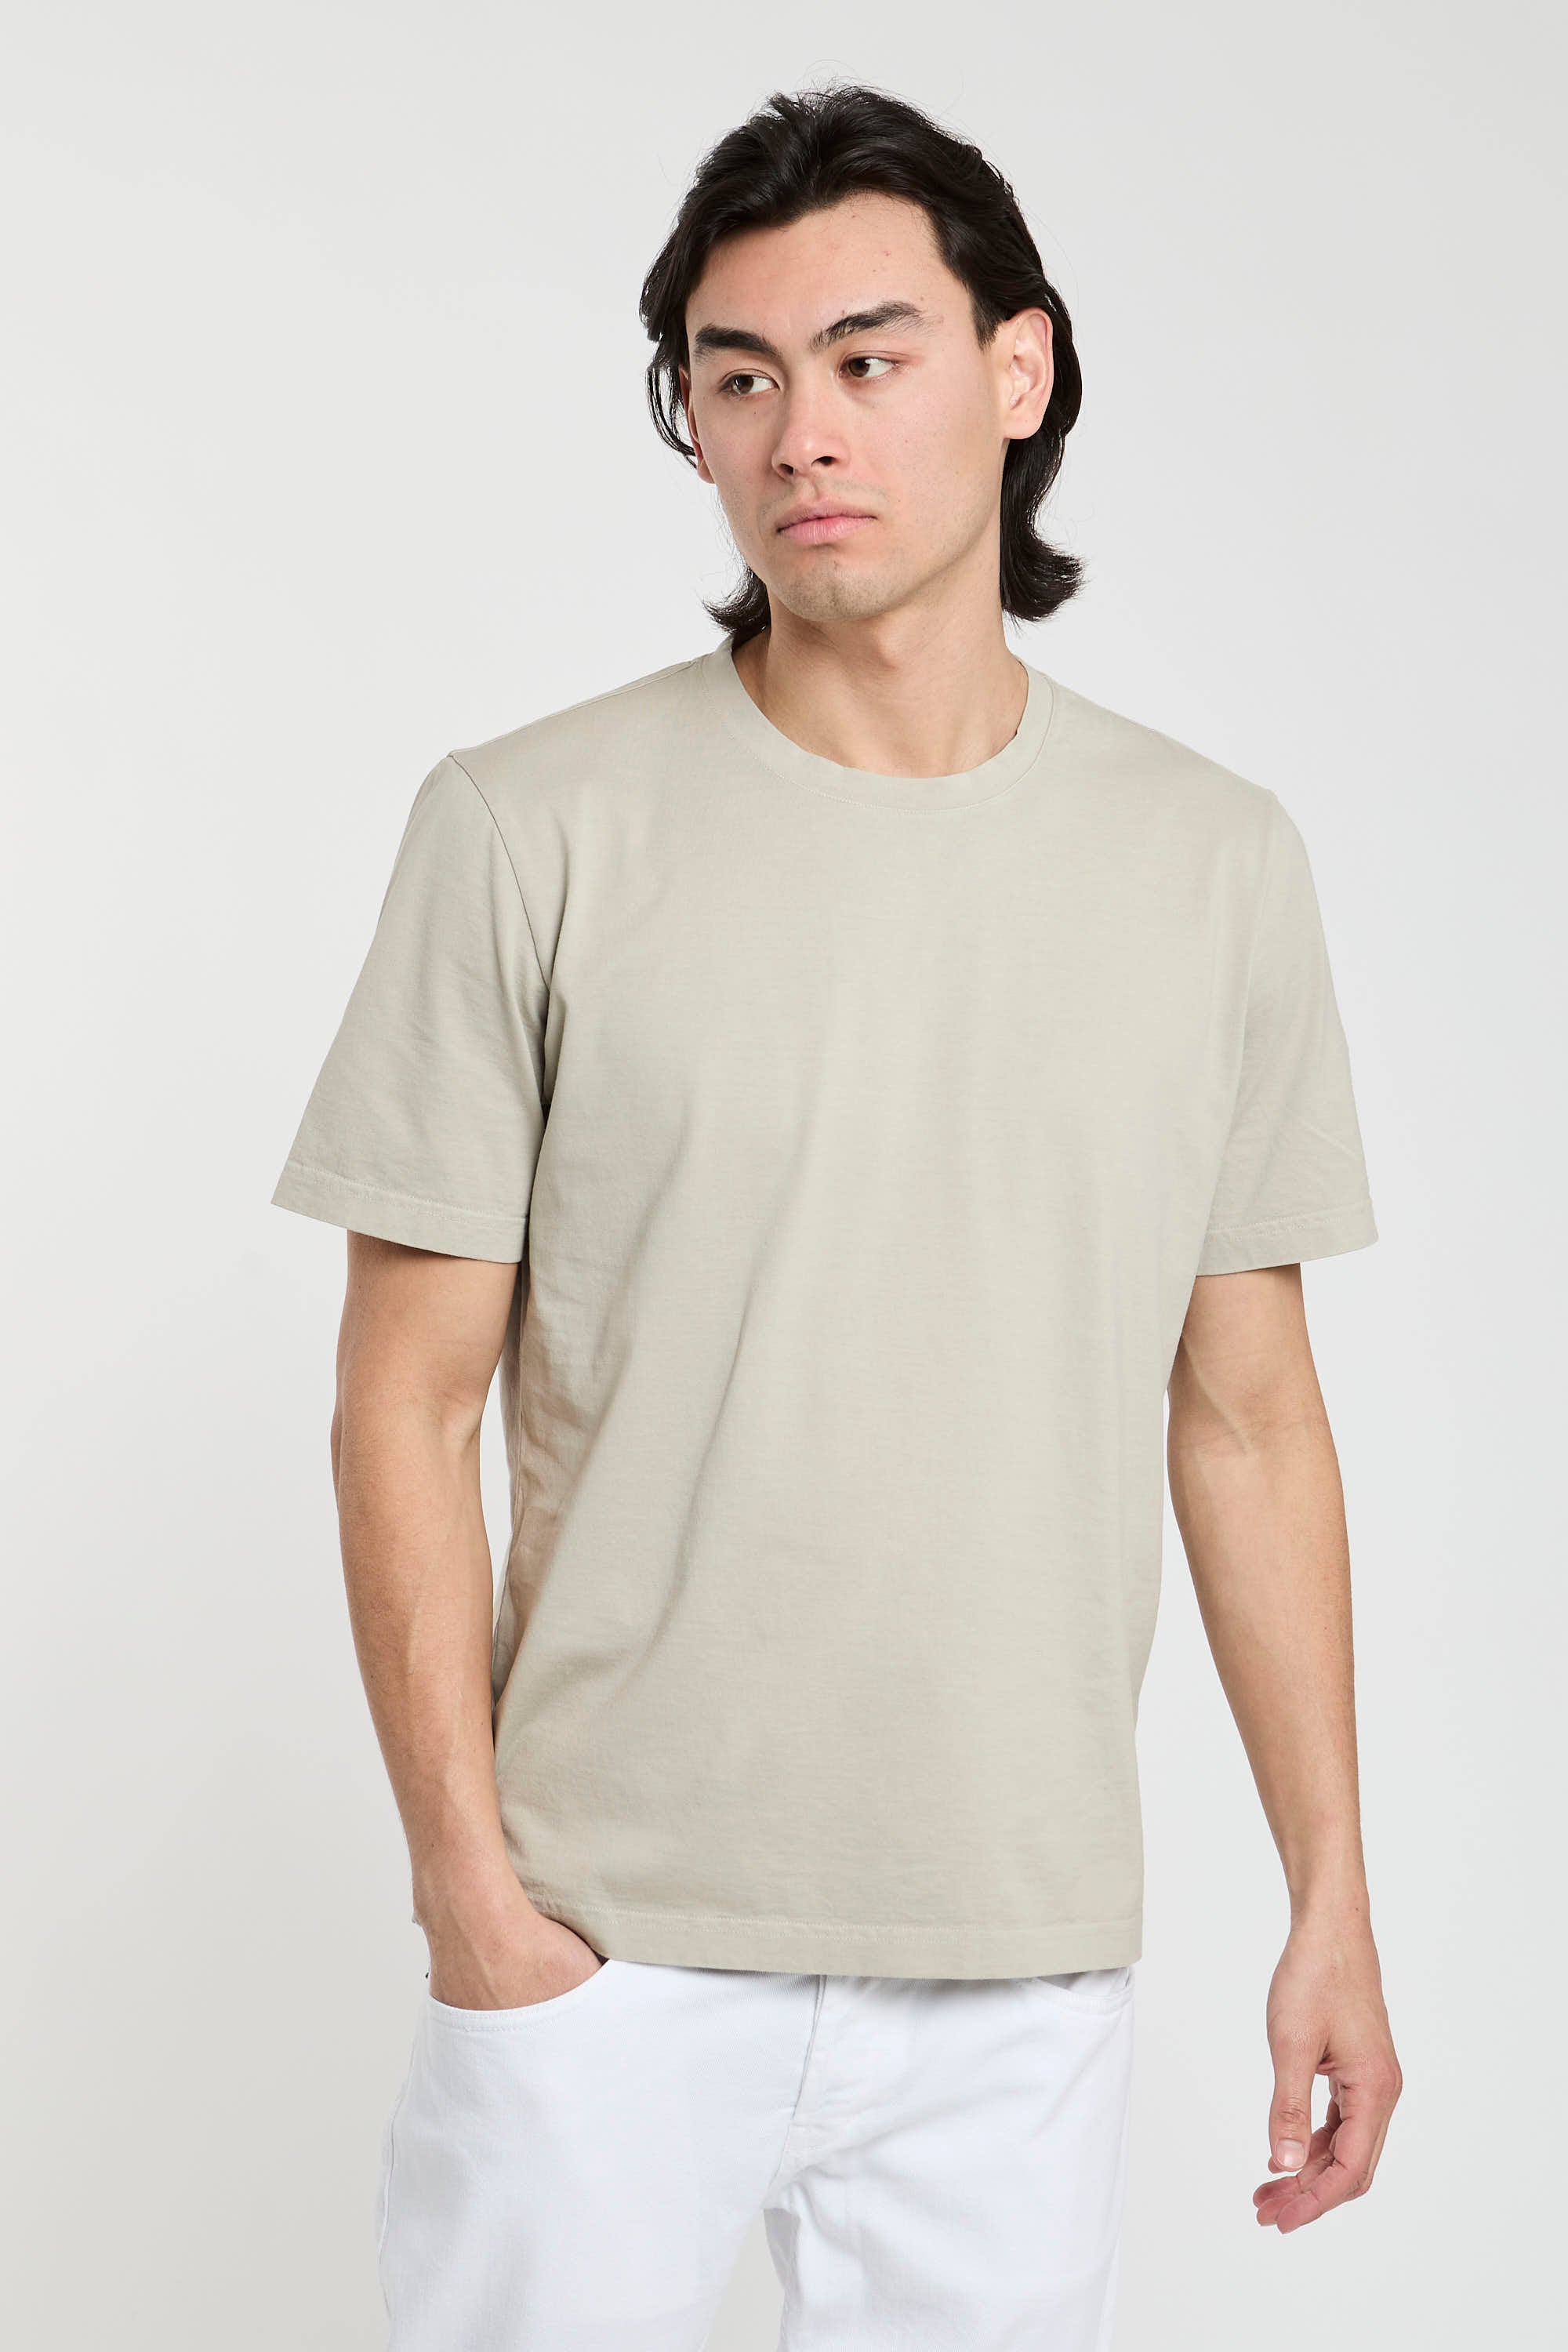 Premiata T-Shirt Jersey aus Baumwolle in Sandfarbe-4